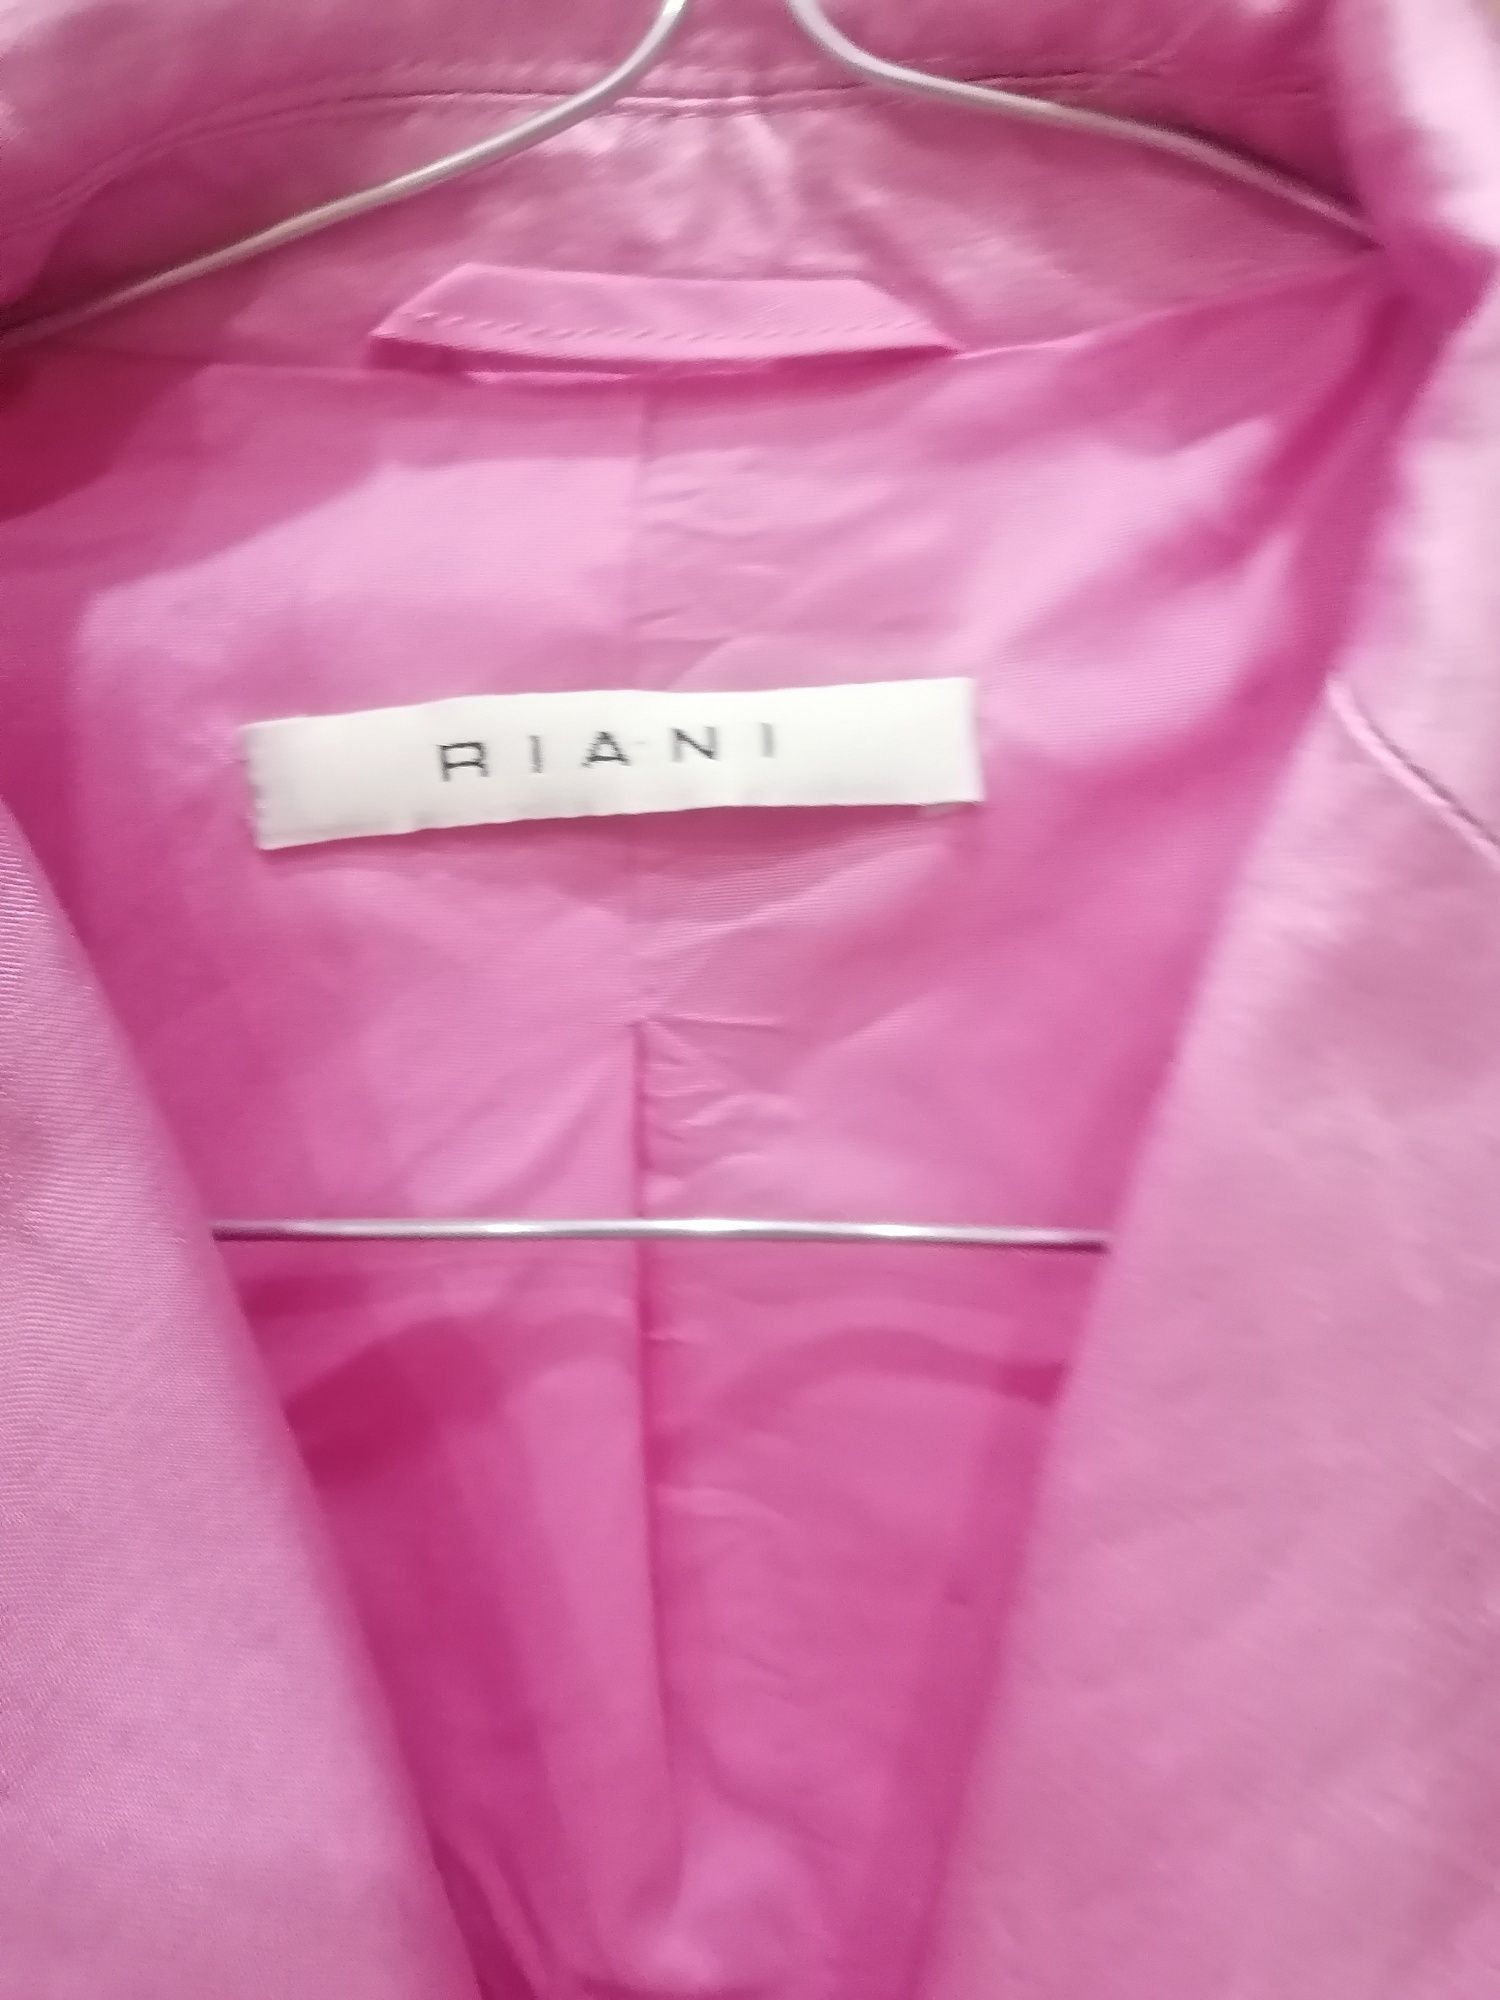 Женский пиджак розовый Piani